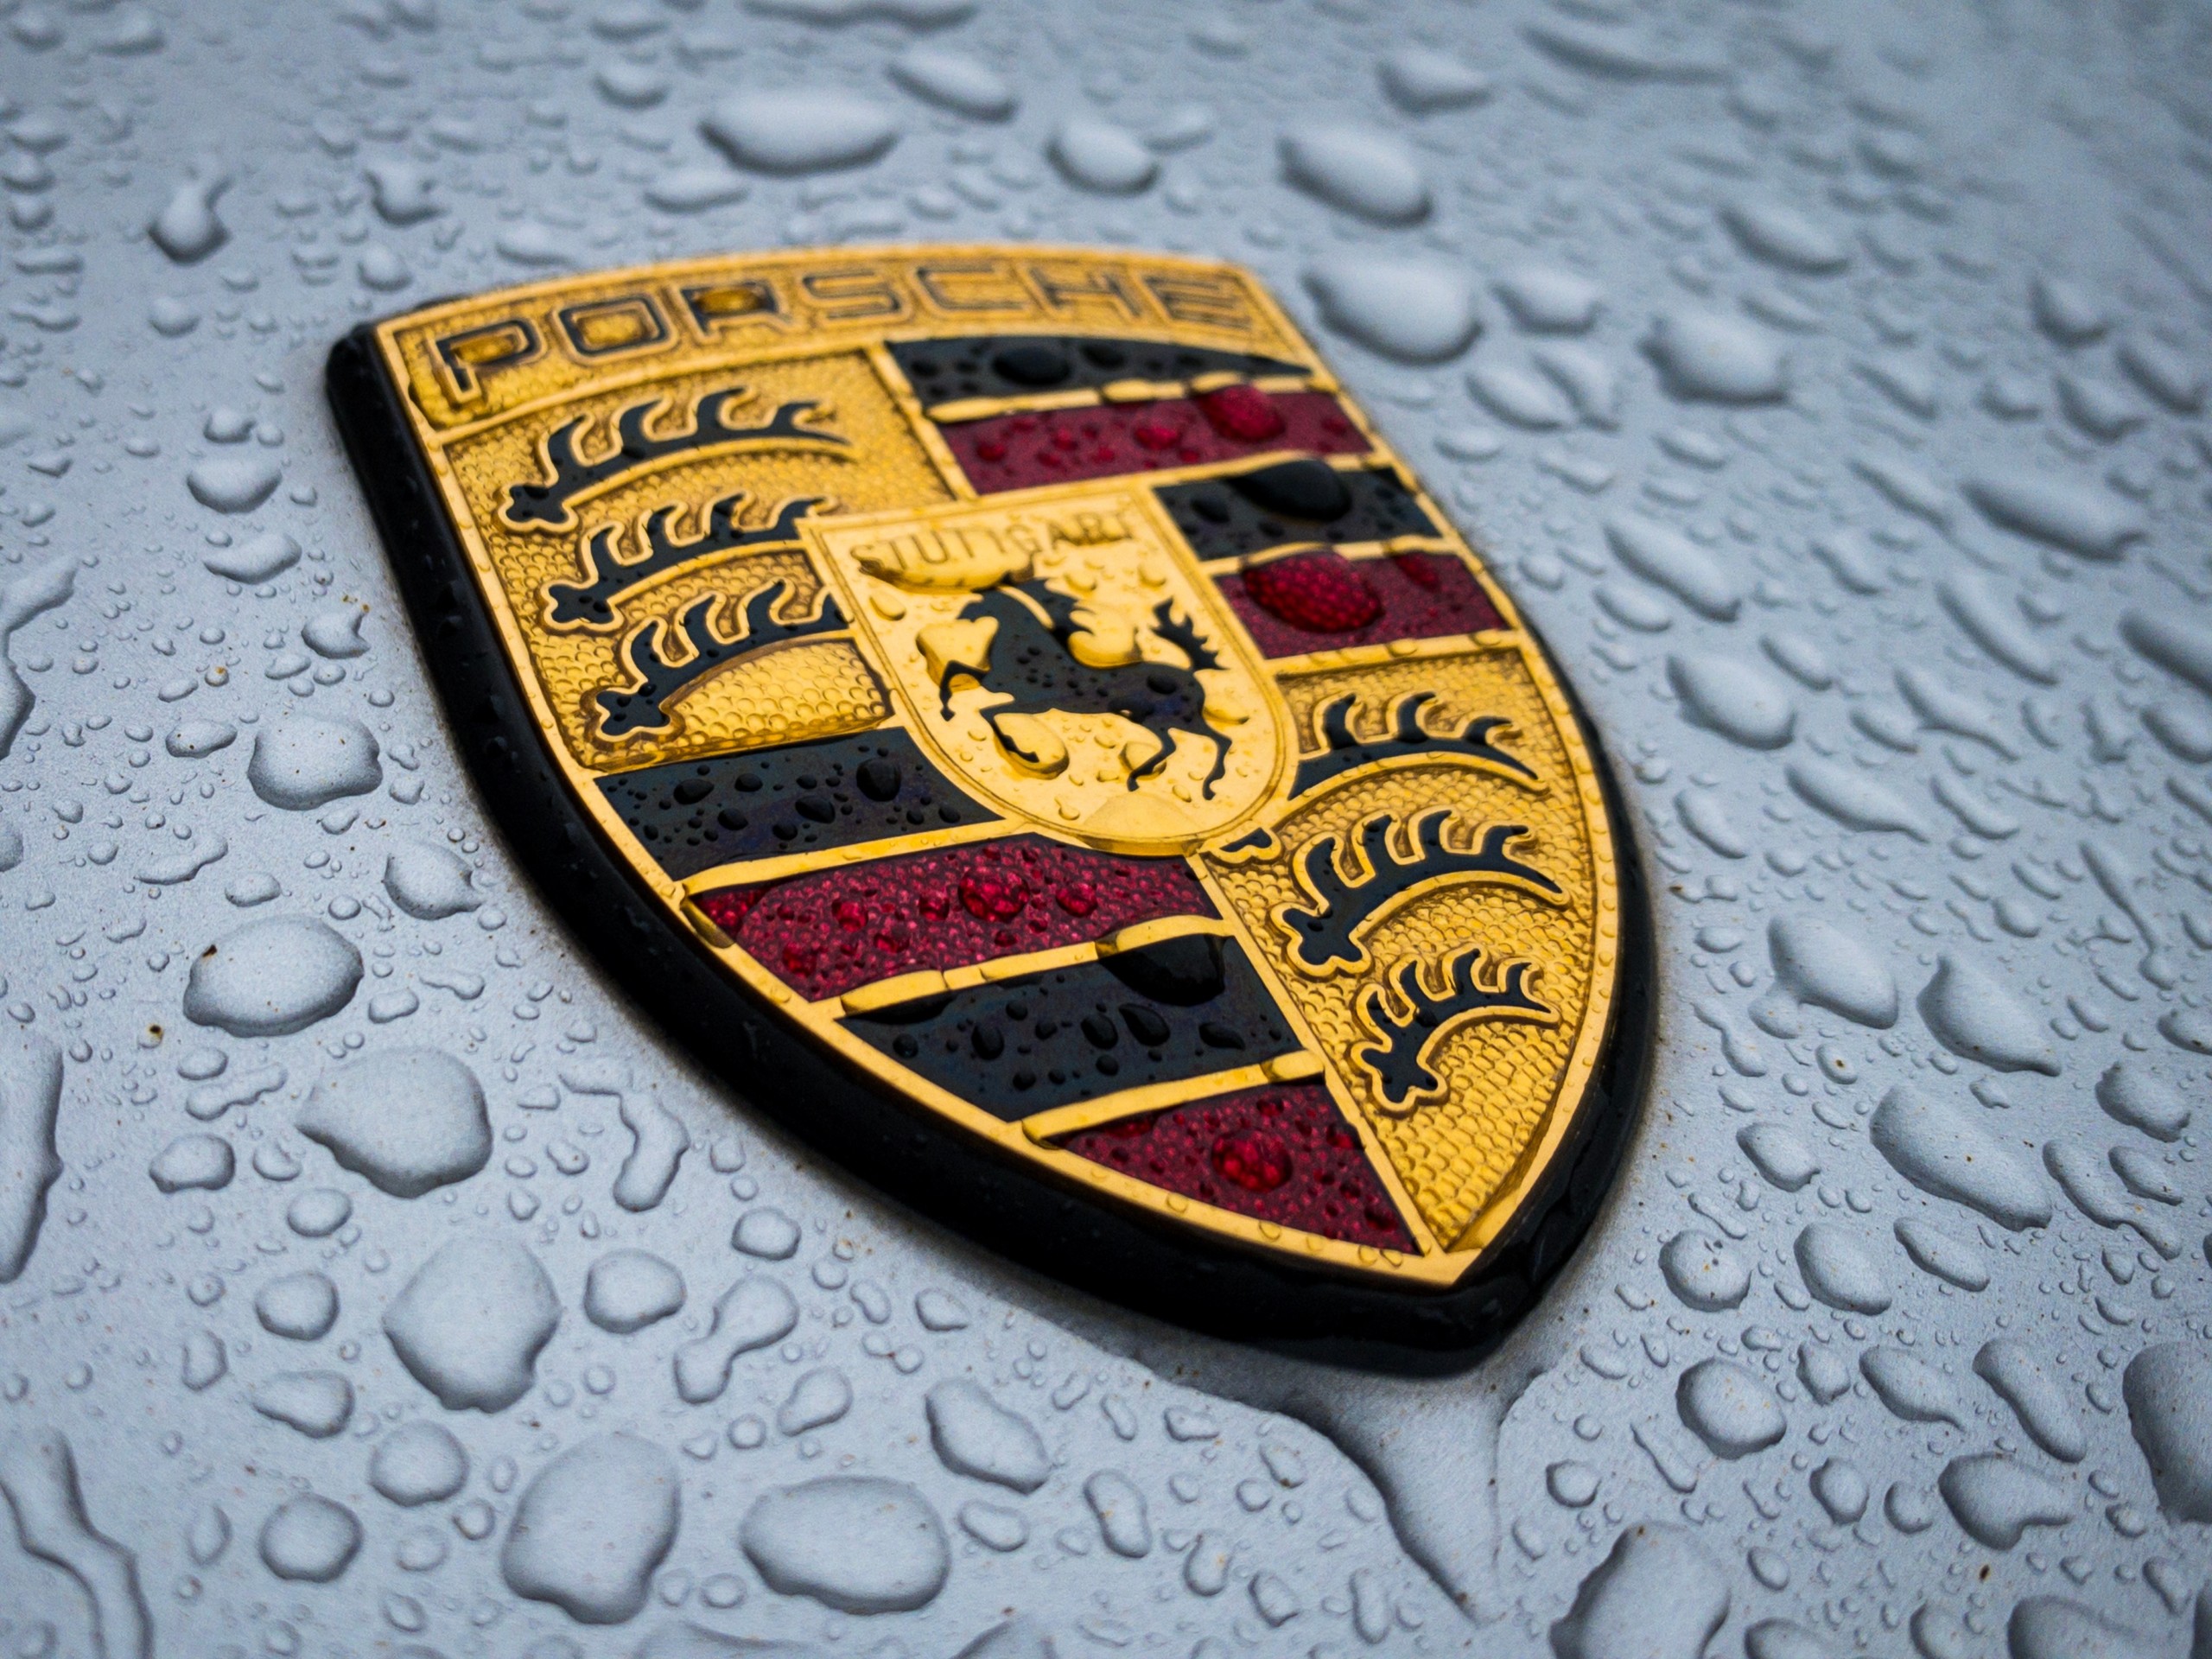 Porsche will sein Engagement bei der Elektromobilität ausbauen – neues Konzept für E-Modell vorgestellt